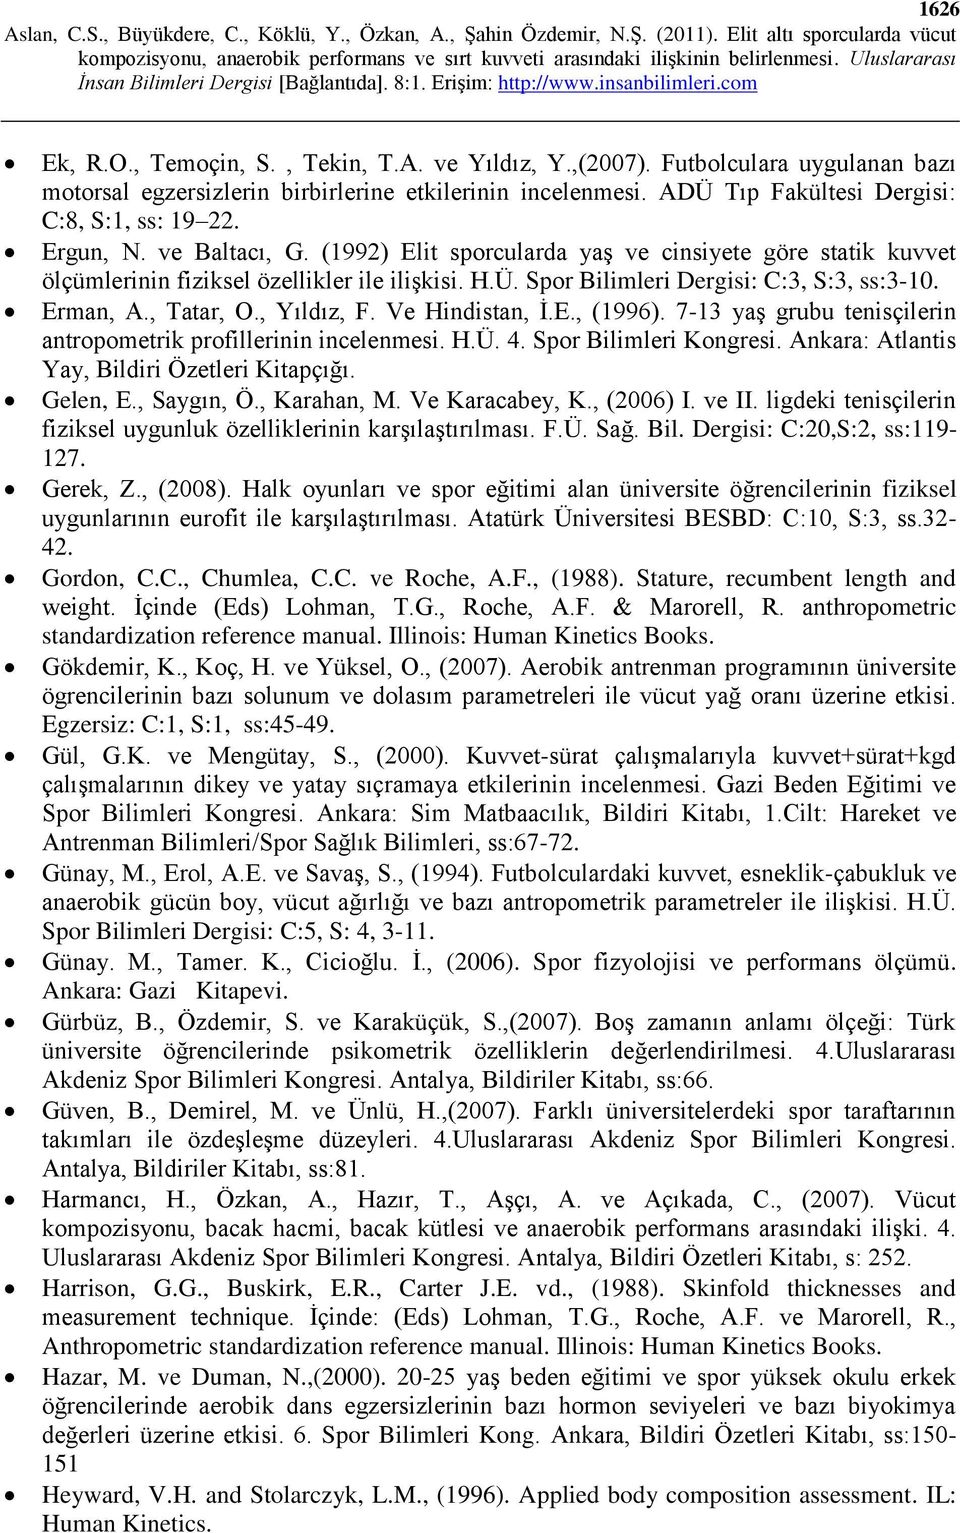 , Yıldız, F. Ve Hindistan, İ.E., (1996). 7-13 yaş grubu tenisçilerin antropometrik profillerinin incelenmesi. H.Ü. 4. Spor Bilimleri Kongresi. Ankara: Atlantis Yay, Bildiri Özetleri Kitapçığı.